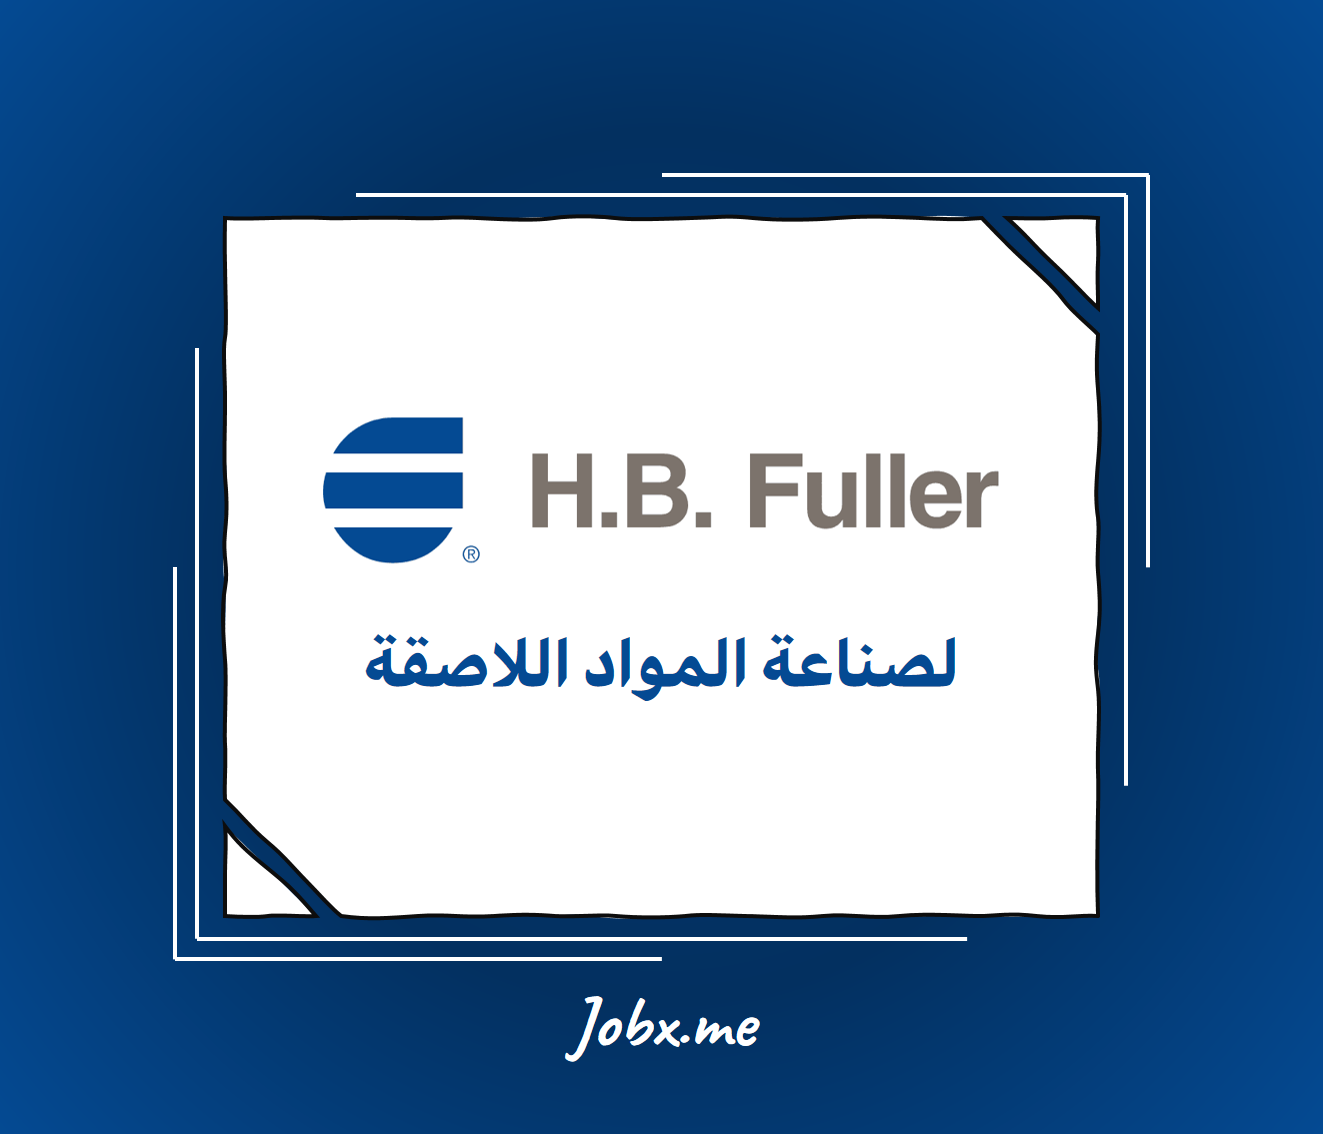 H.B Fuller Careers